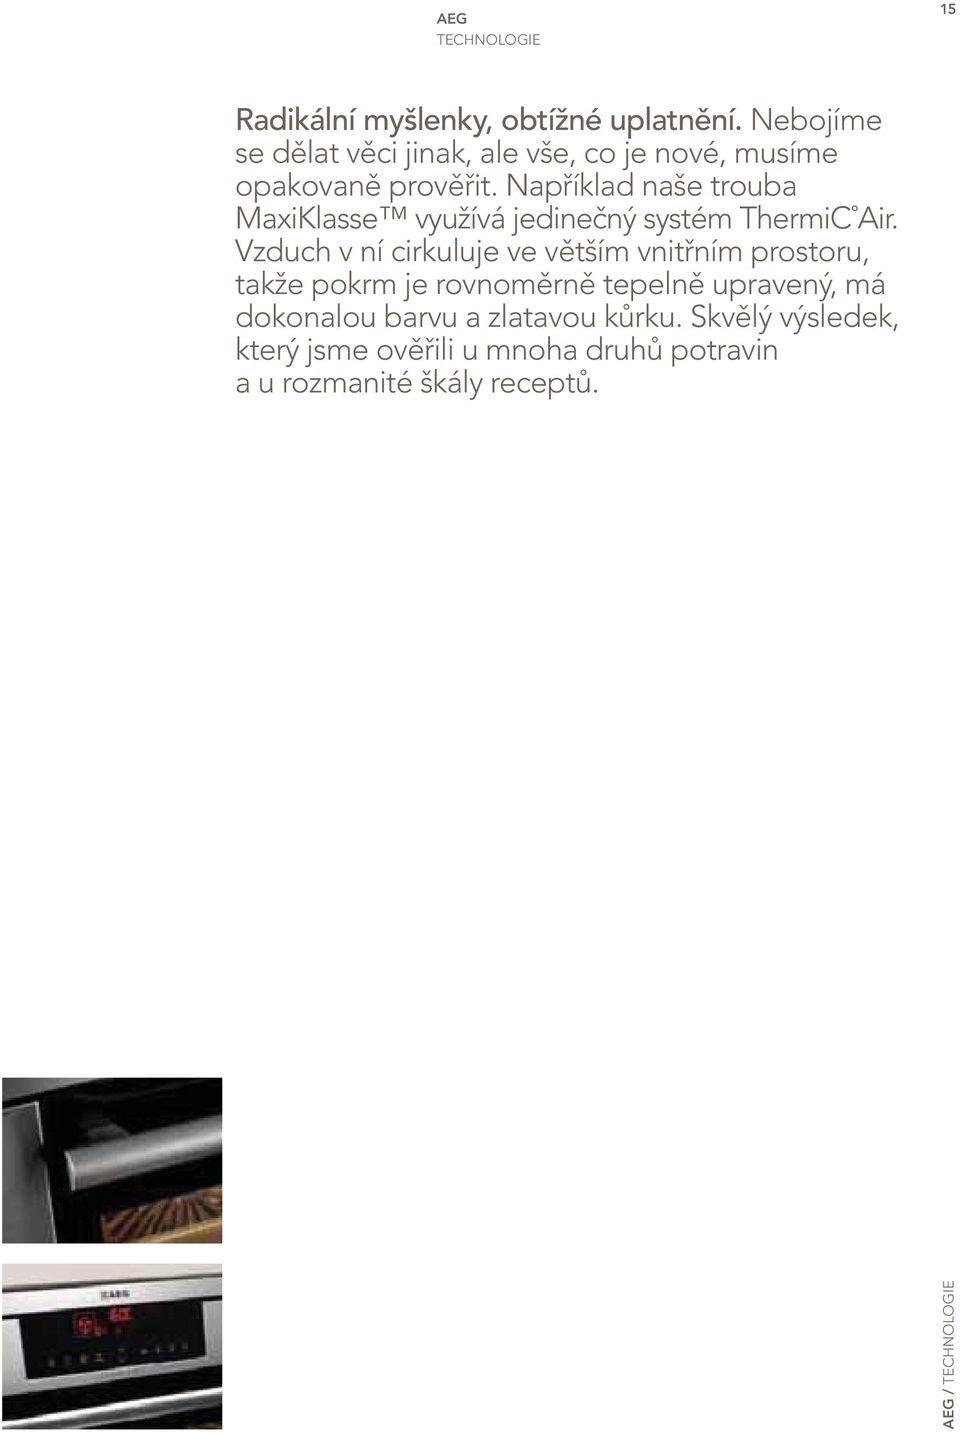 Například naše trouba MaxiKlasse využívá jedinečný systém ThermiC Air.